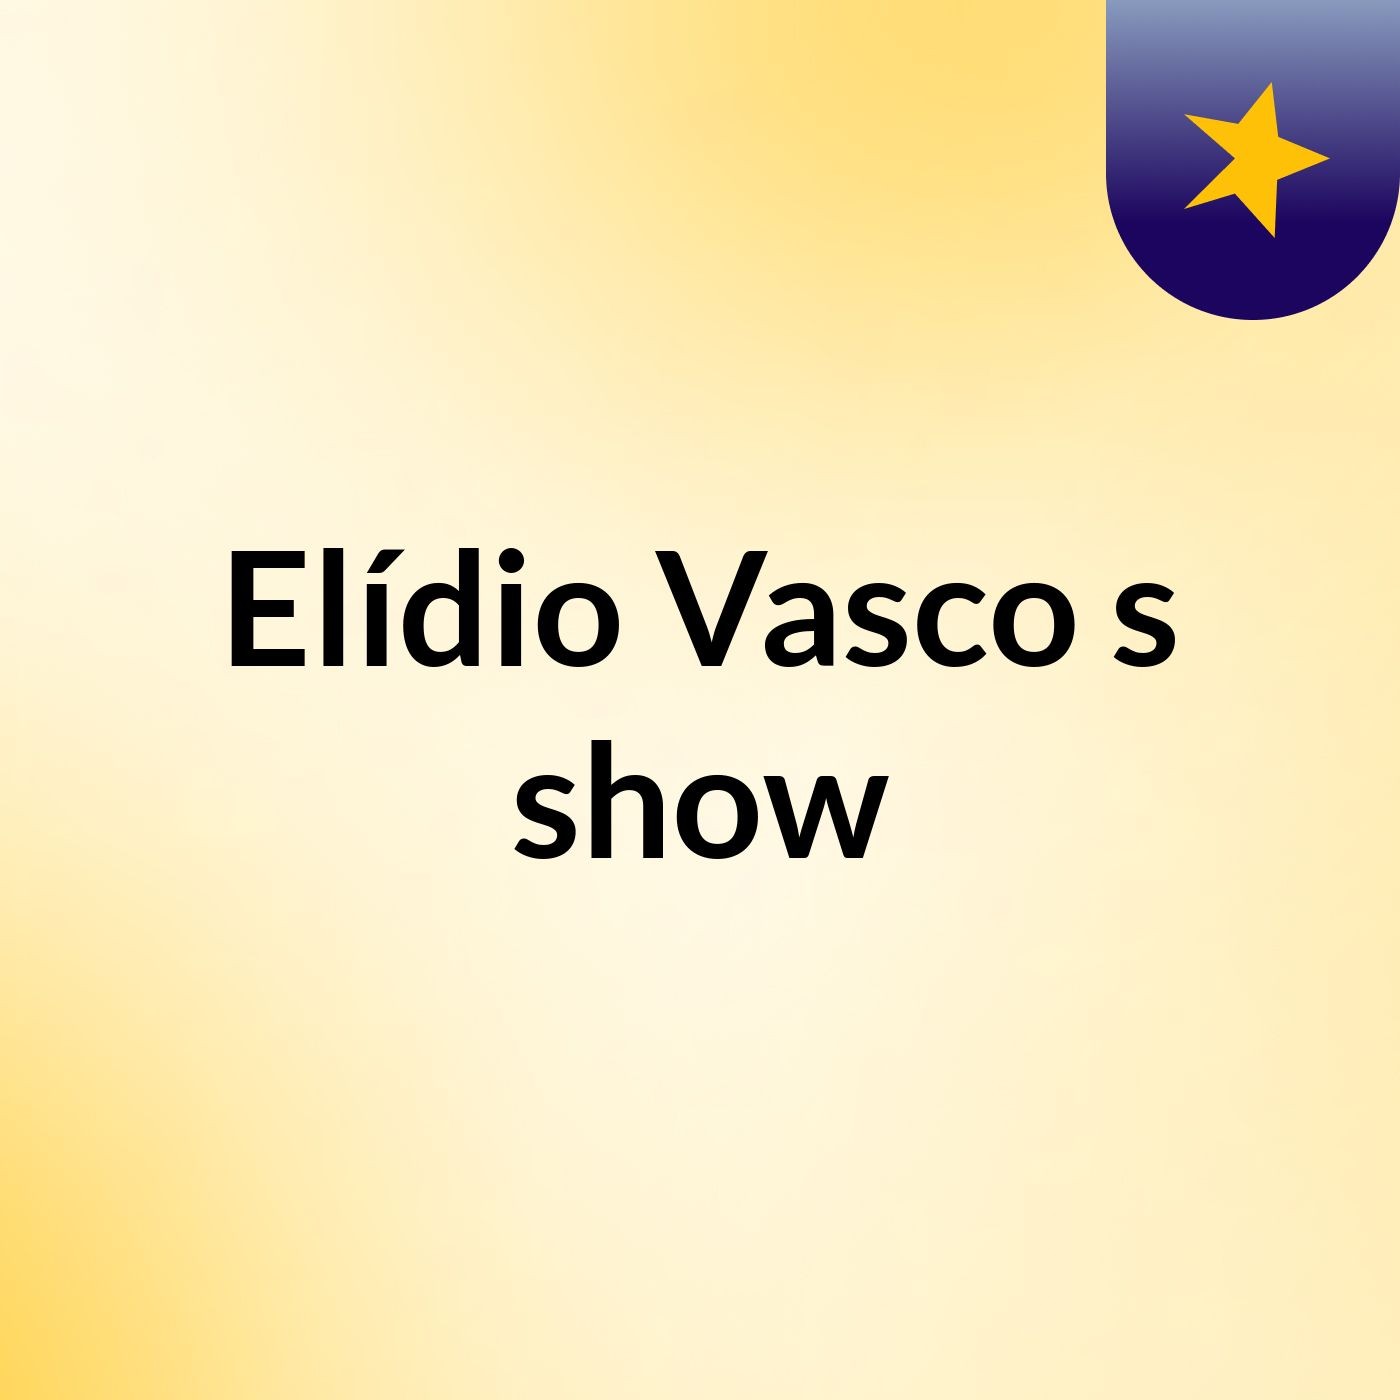 Elídio Vasco's show